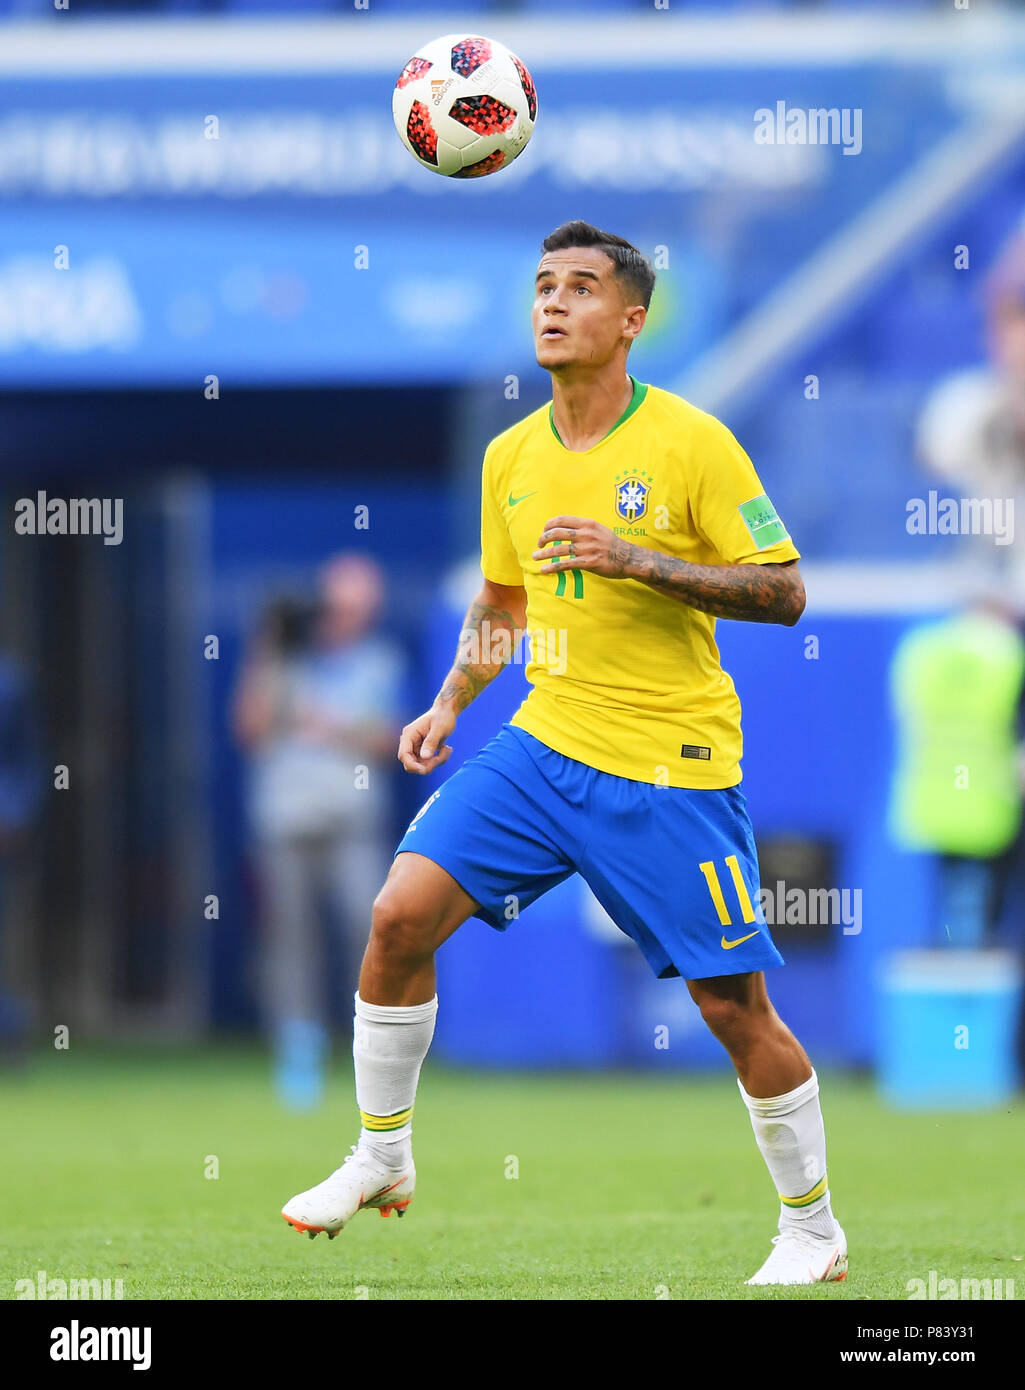 SAMARA, Rusia - el 02 de julio: Philippe Coutinho de Brasil en acción  durante la Copa Mundial de la FIFA 2018 en Rusia partido de octavos de  final entre Brasil y México